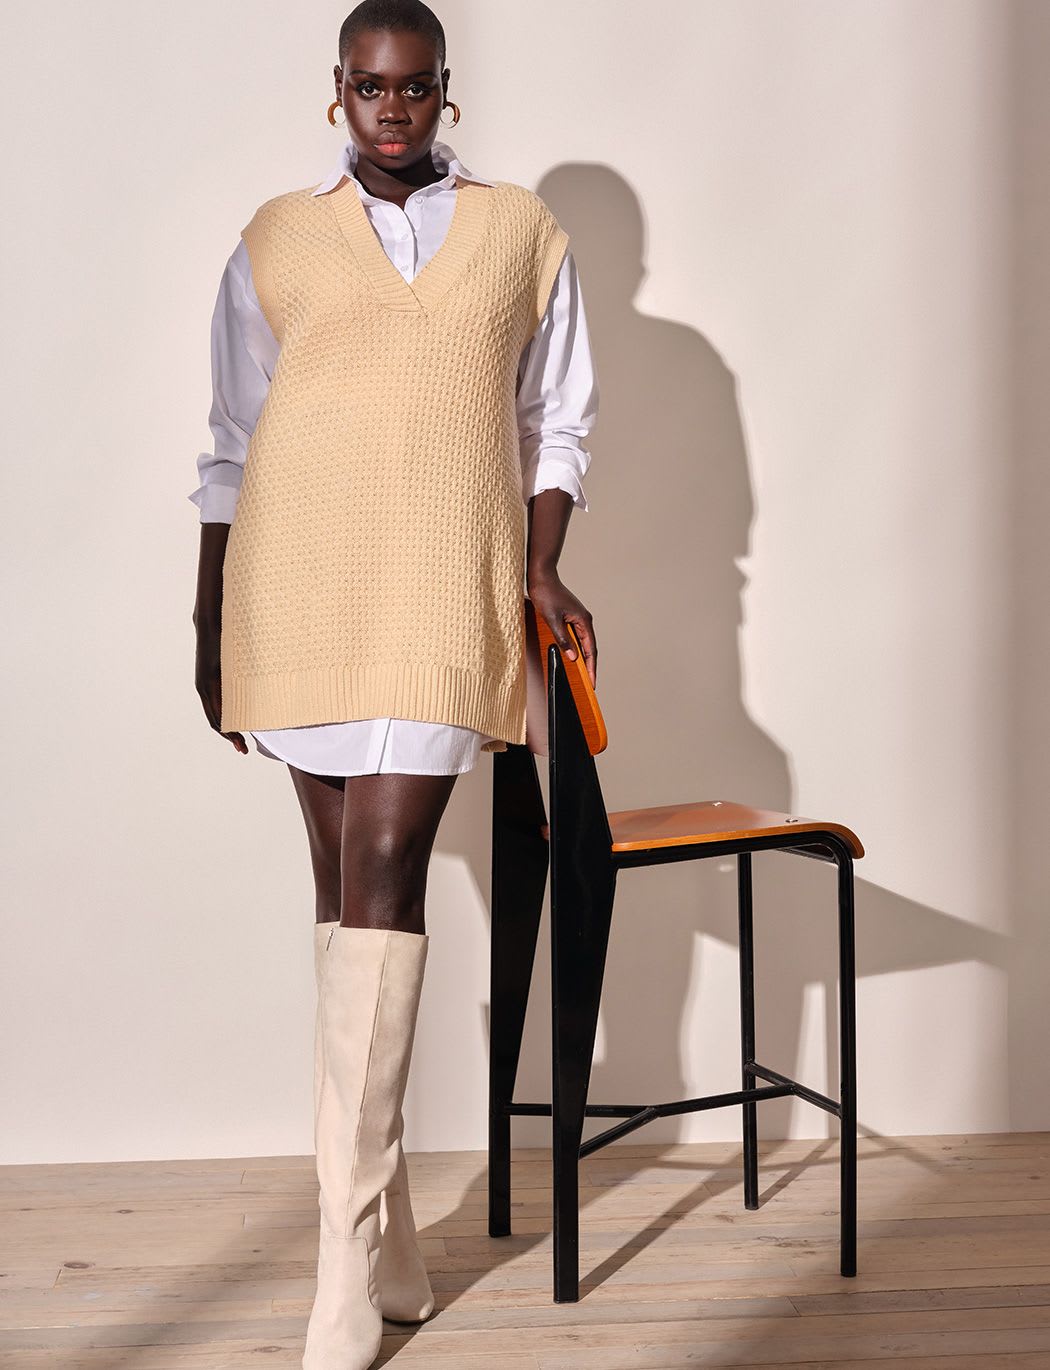 Buitenshuis Gedragen Beeldhouwer 3 ways to style sweater vests in 2021, according to stylists